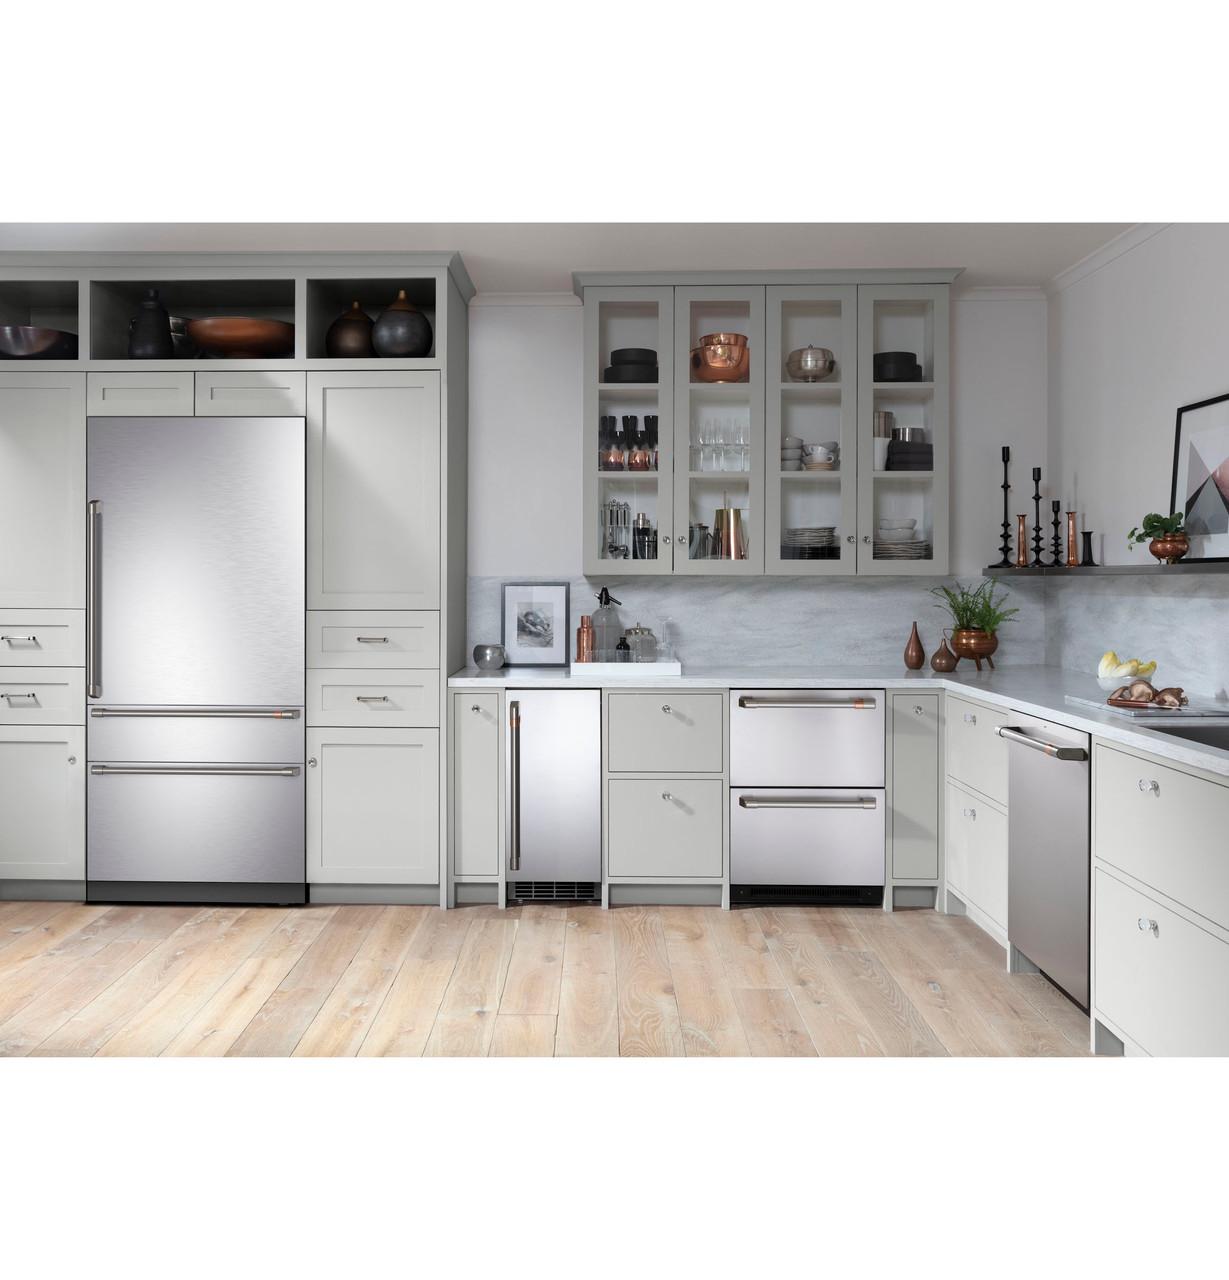 Cafe Caf(eback)™ 36" Integrated Bottom-Freezer Refrigerator